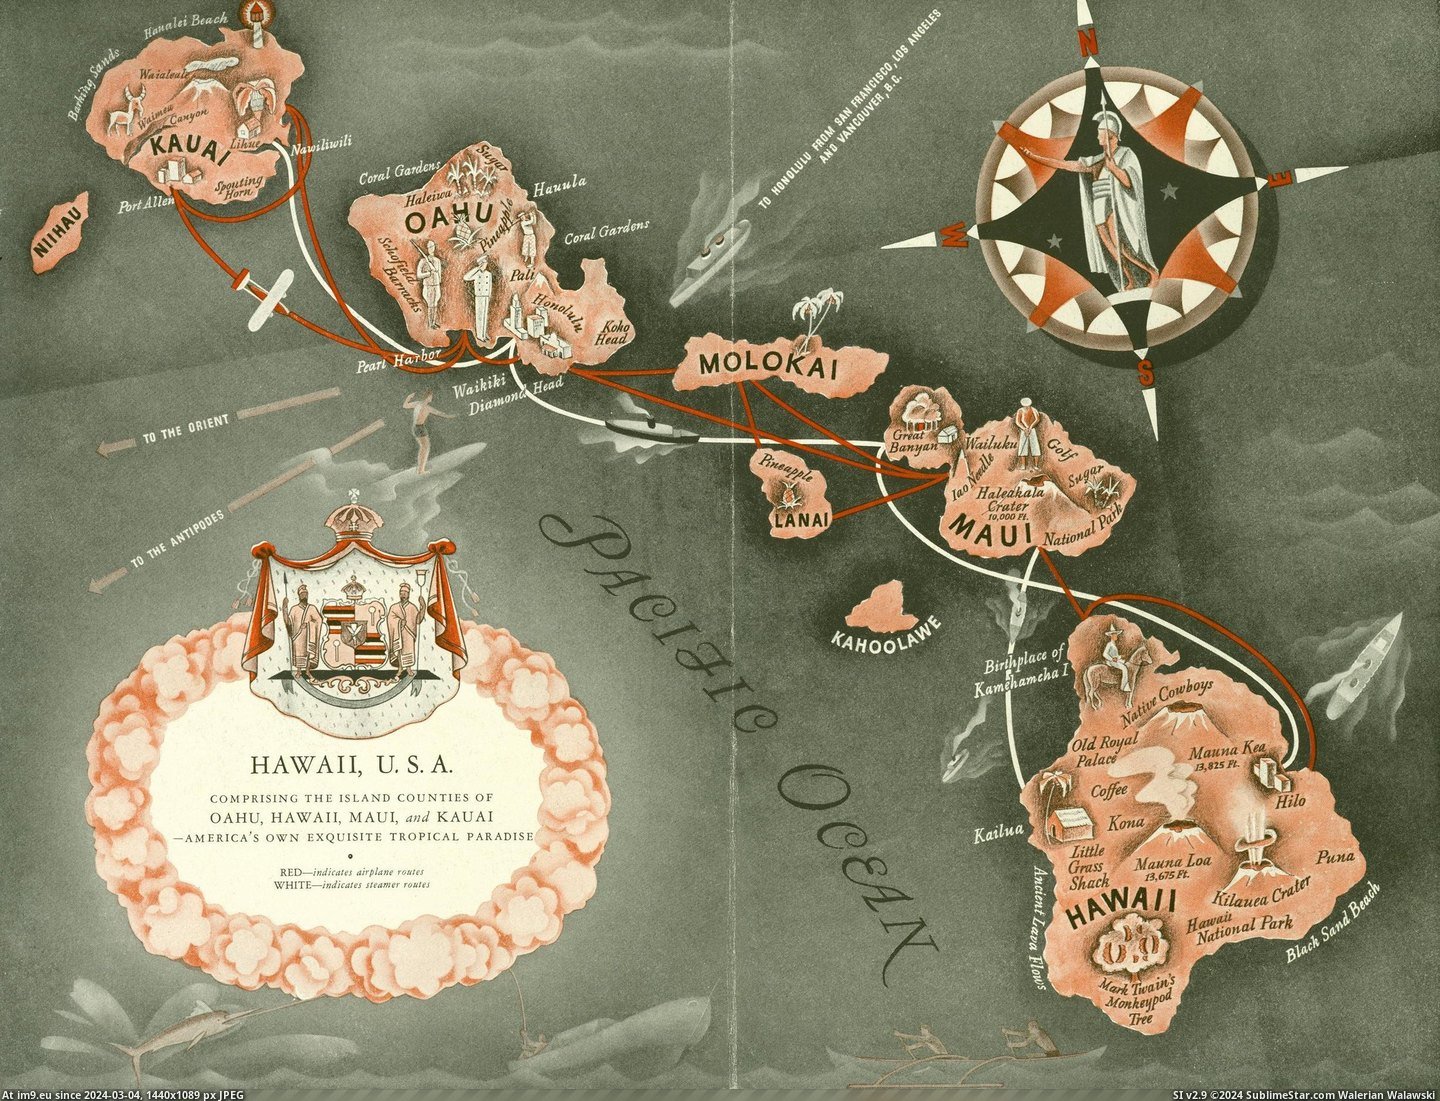 #Islands #Stewart #Hawaiian #Hawaii [Mapporn] The Hawaiian Islands from Norma Stewart's 1935 Aloha Hawaii scrapbook. [2,450 x 1,865] Pic. (Bild von album My r/MAPS favs))